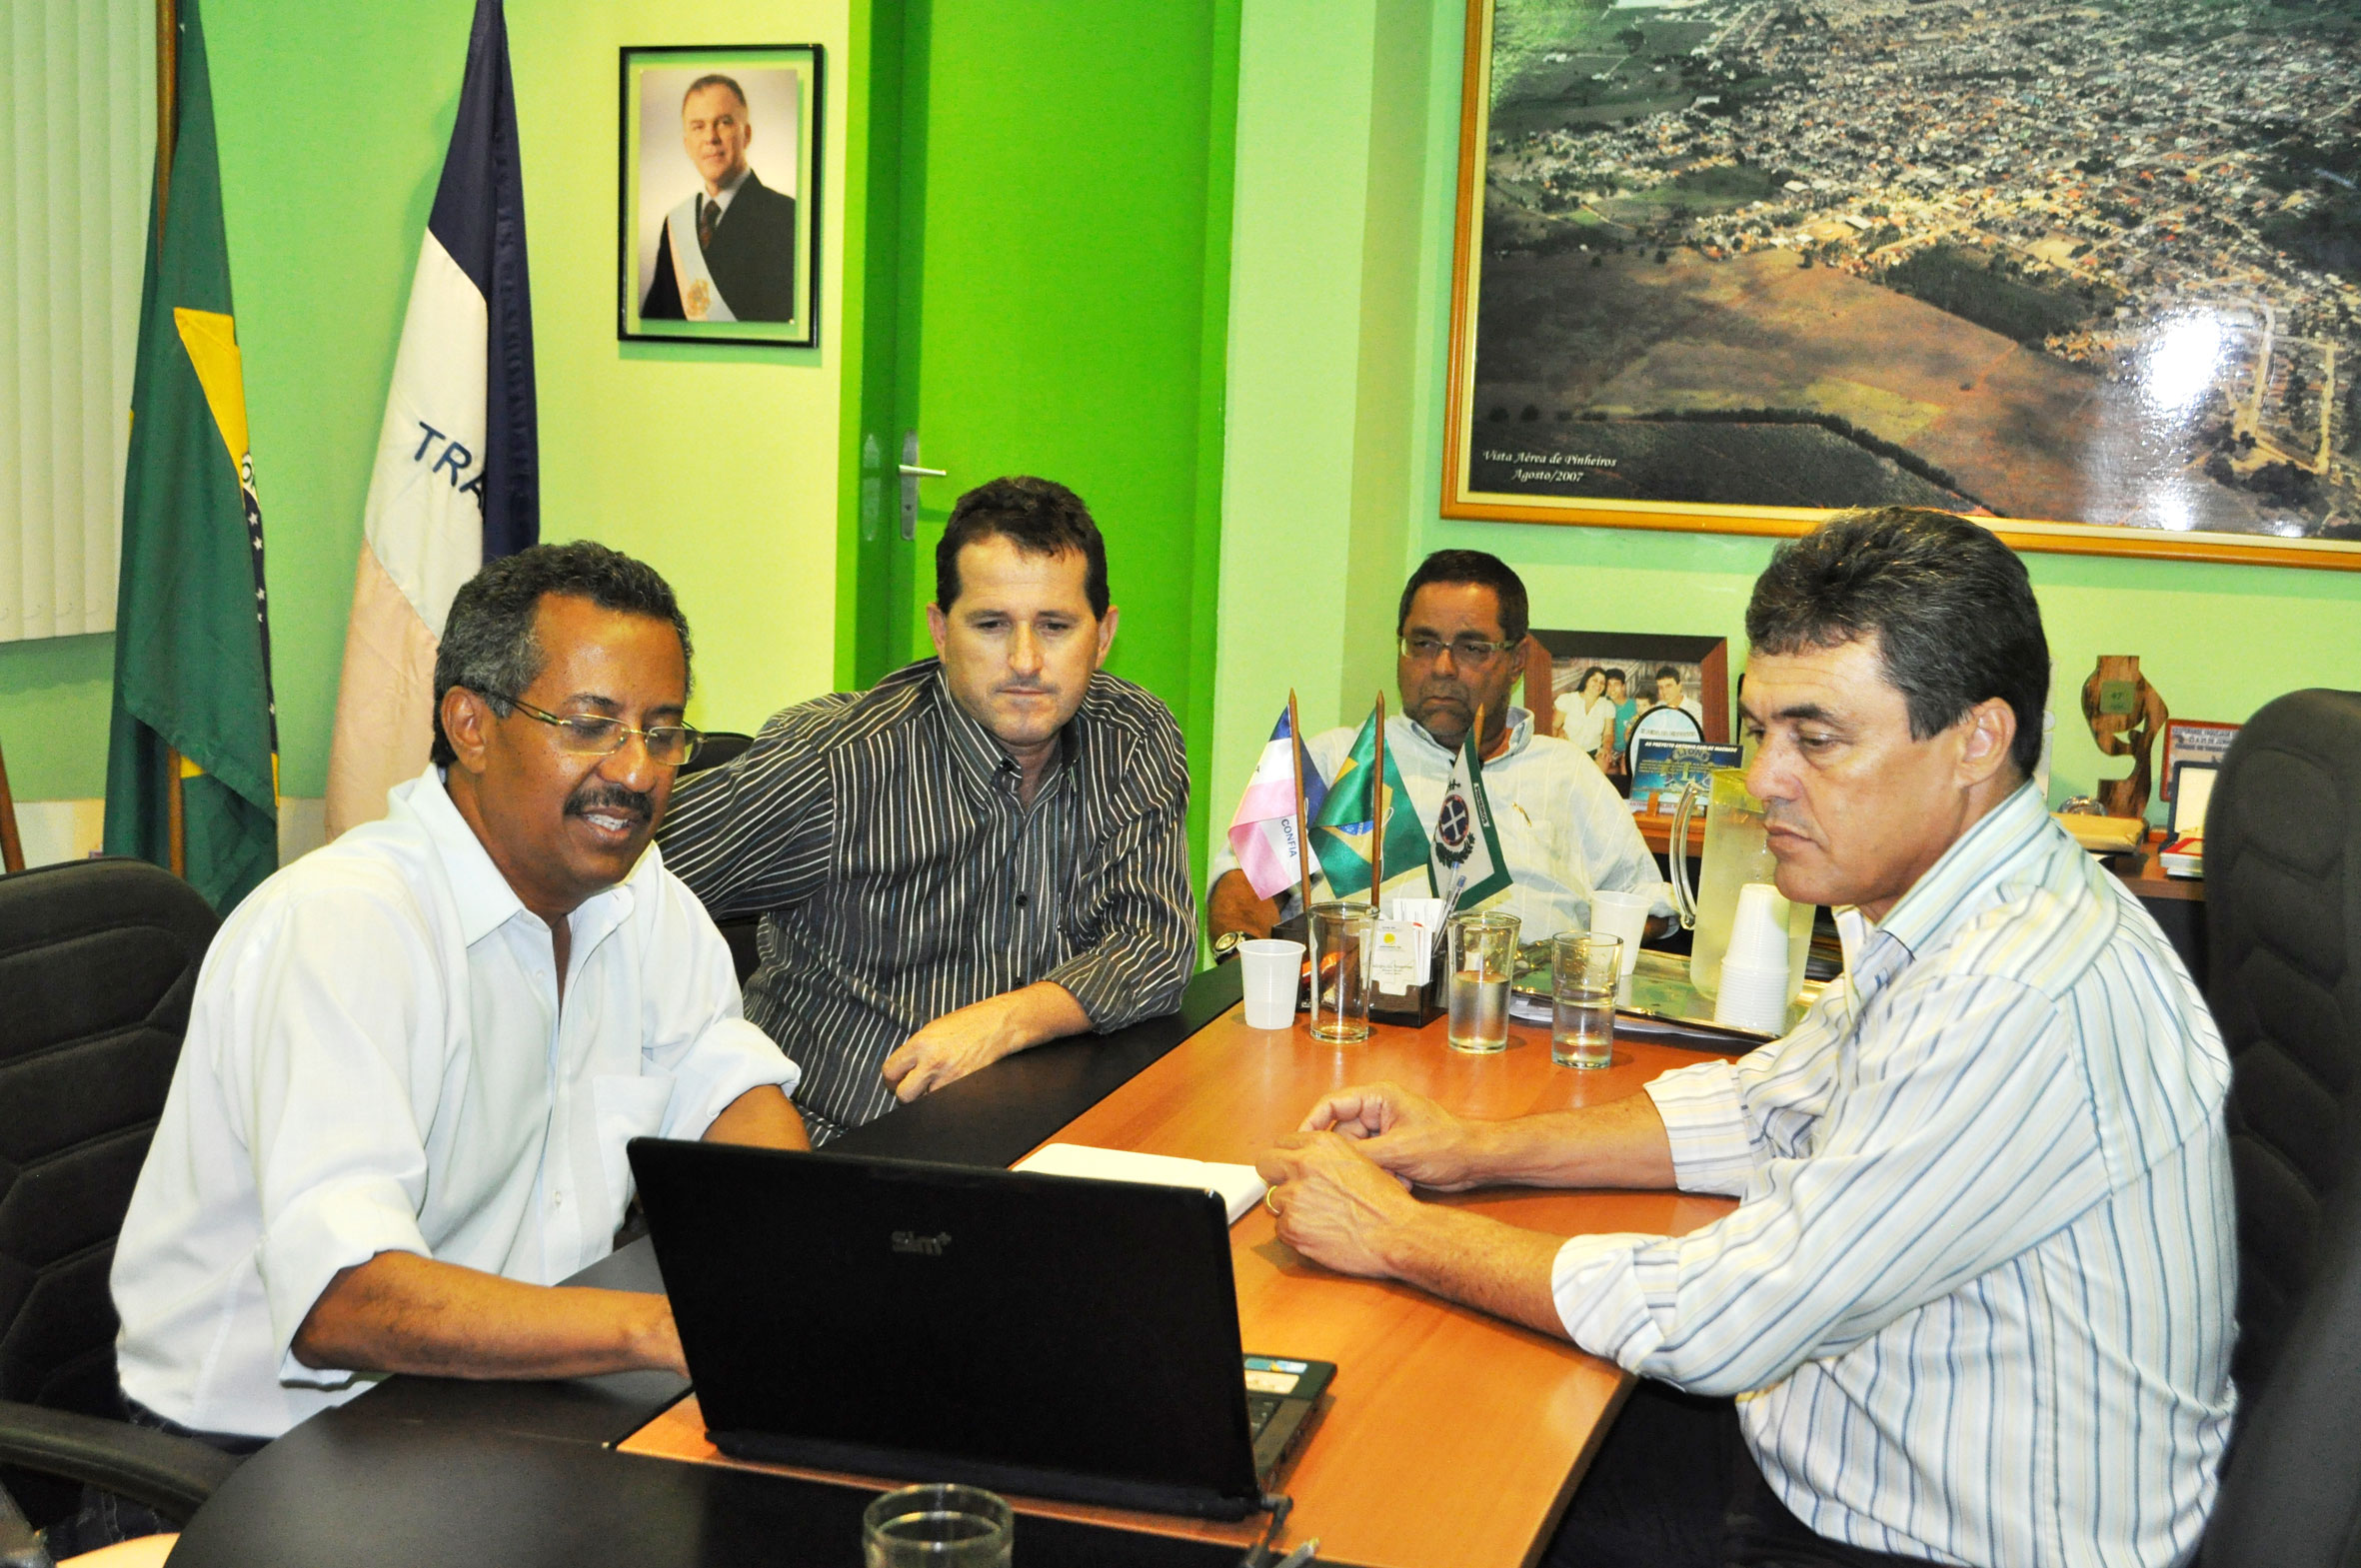 Prefeito Antonio da Emater recebe deputado federal Jorge Silva em seu gabinete.